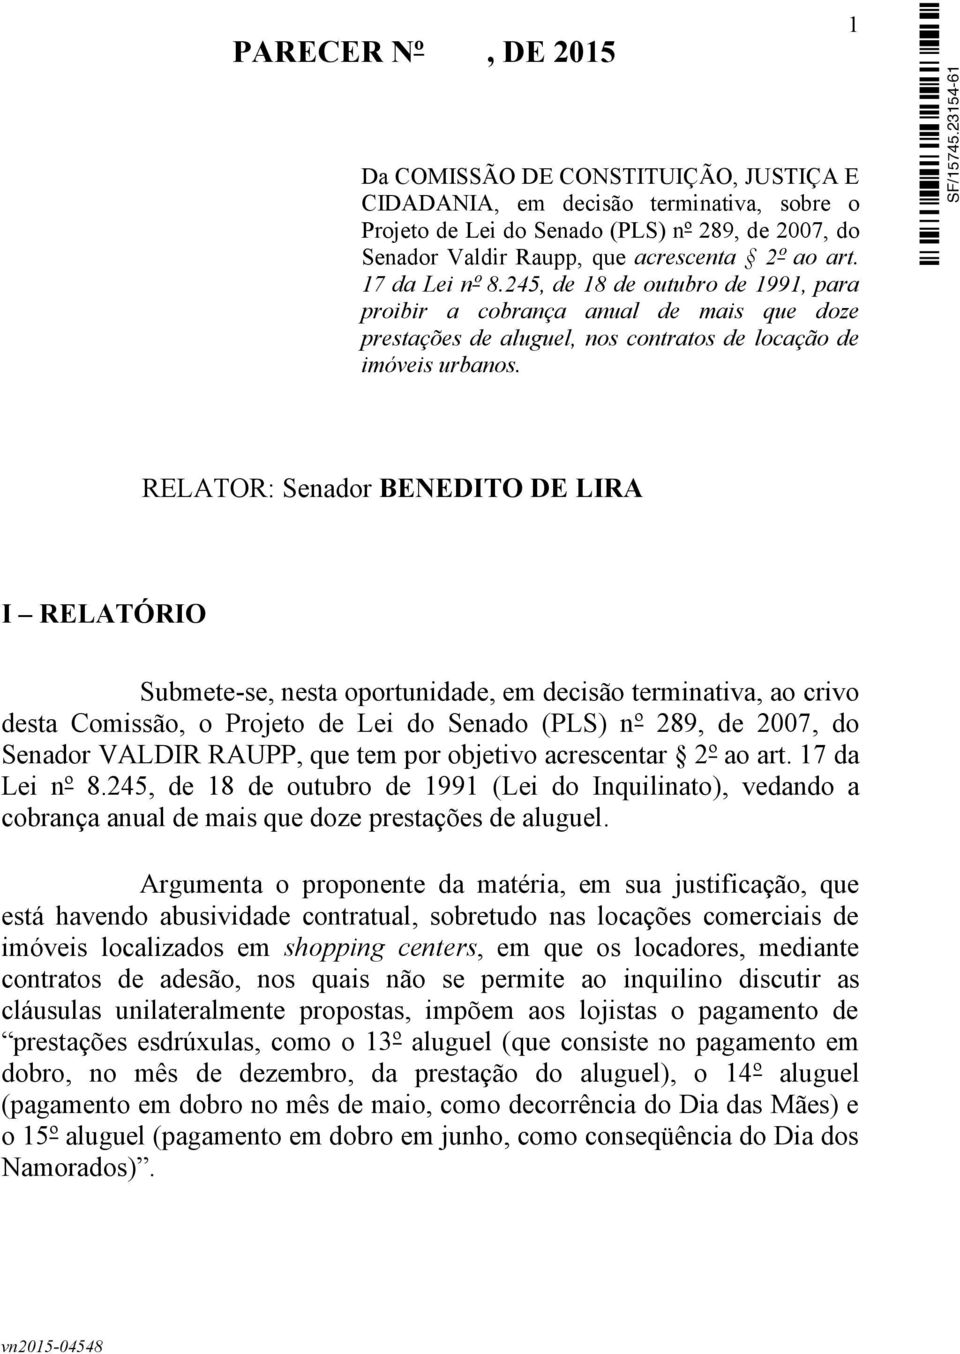 1 RELATOR: Senador BENEDITO DE LIRA I RELATÓRIO Submete-se, nesta oportunidade, em decisão terminativa, ao crivo desta Comissão, o Projeto de Lei do Senado (PLS) nº 289, de 2007, do Senador VALDIR